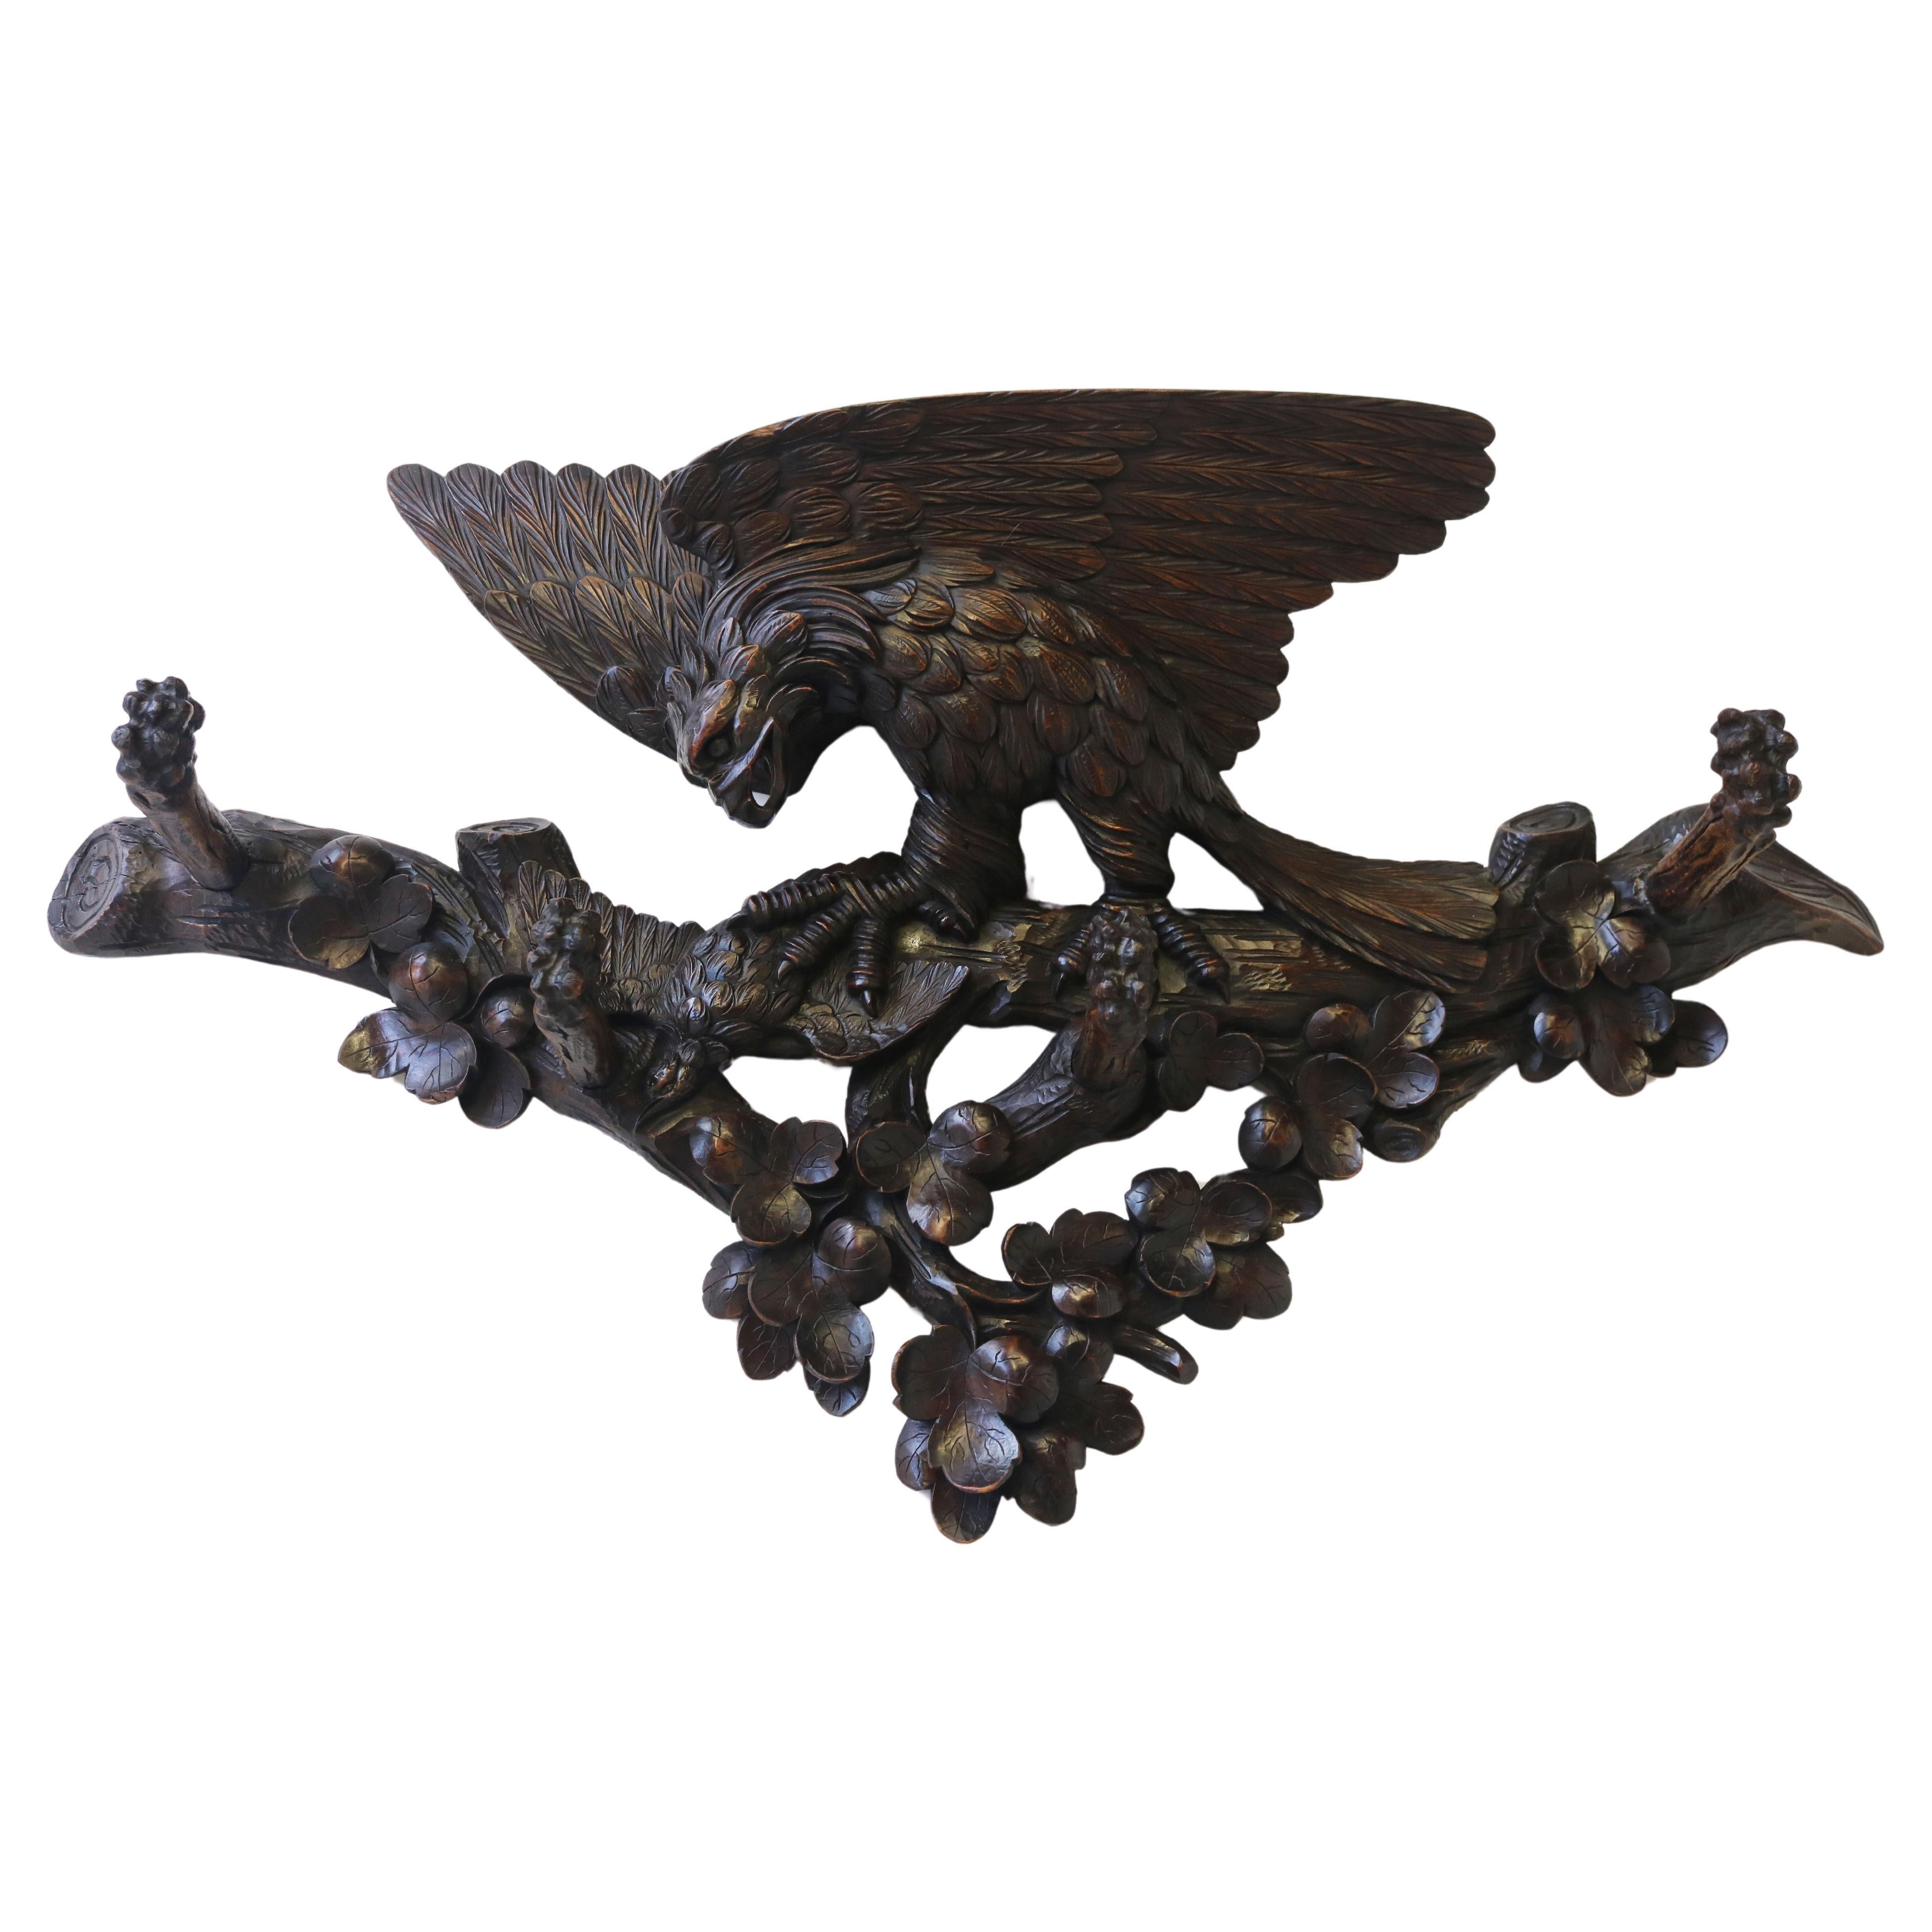 Exquisite 19. Jahrhundert Schweizer Black Forest Kleiderständer geschnitzt Adler Flur antik